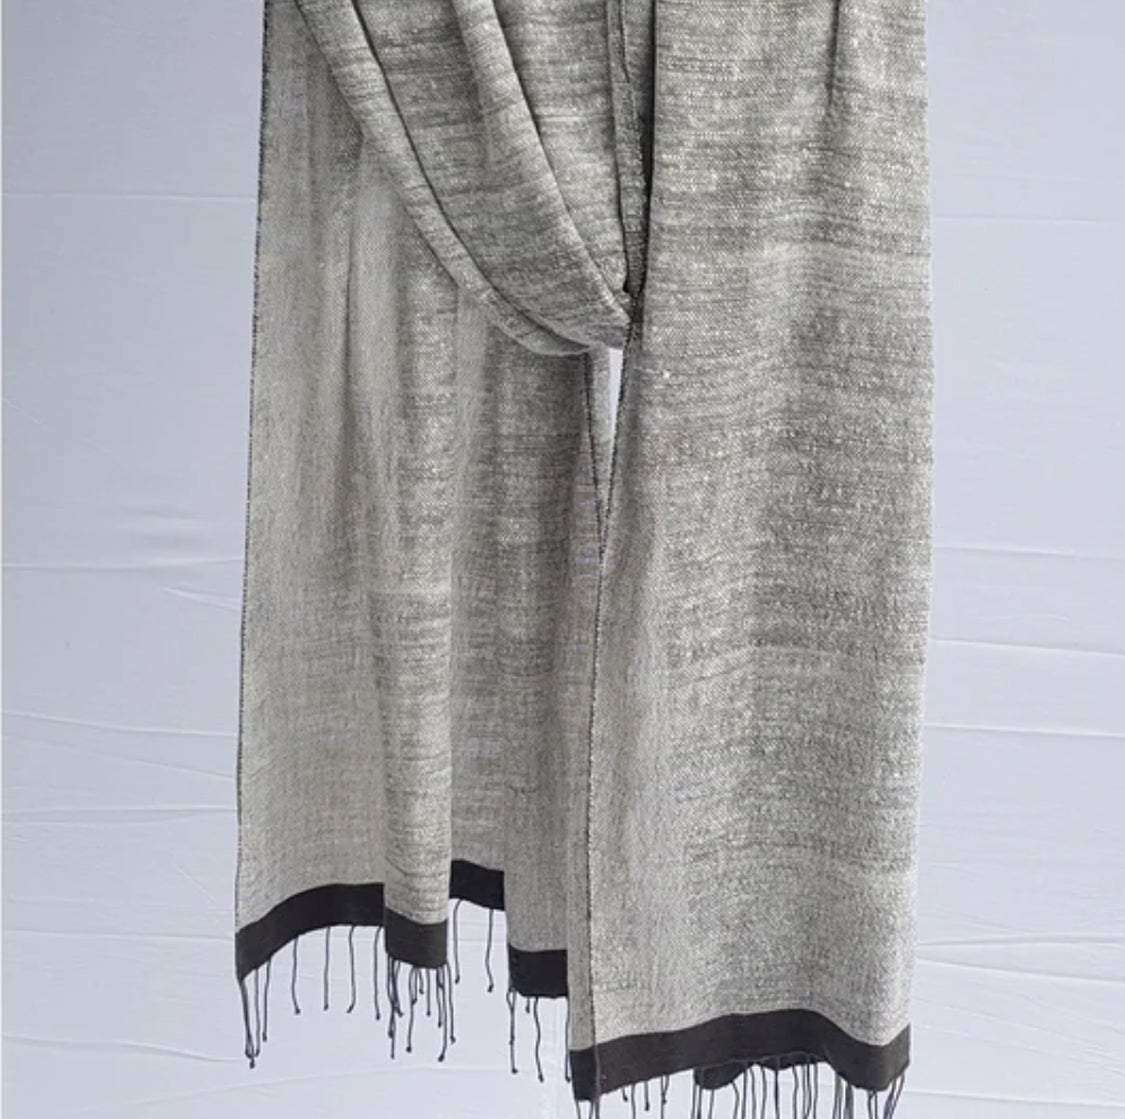 Ethiopia, Sabahar, Stella shawl